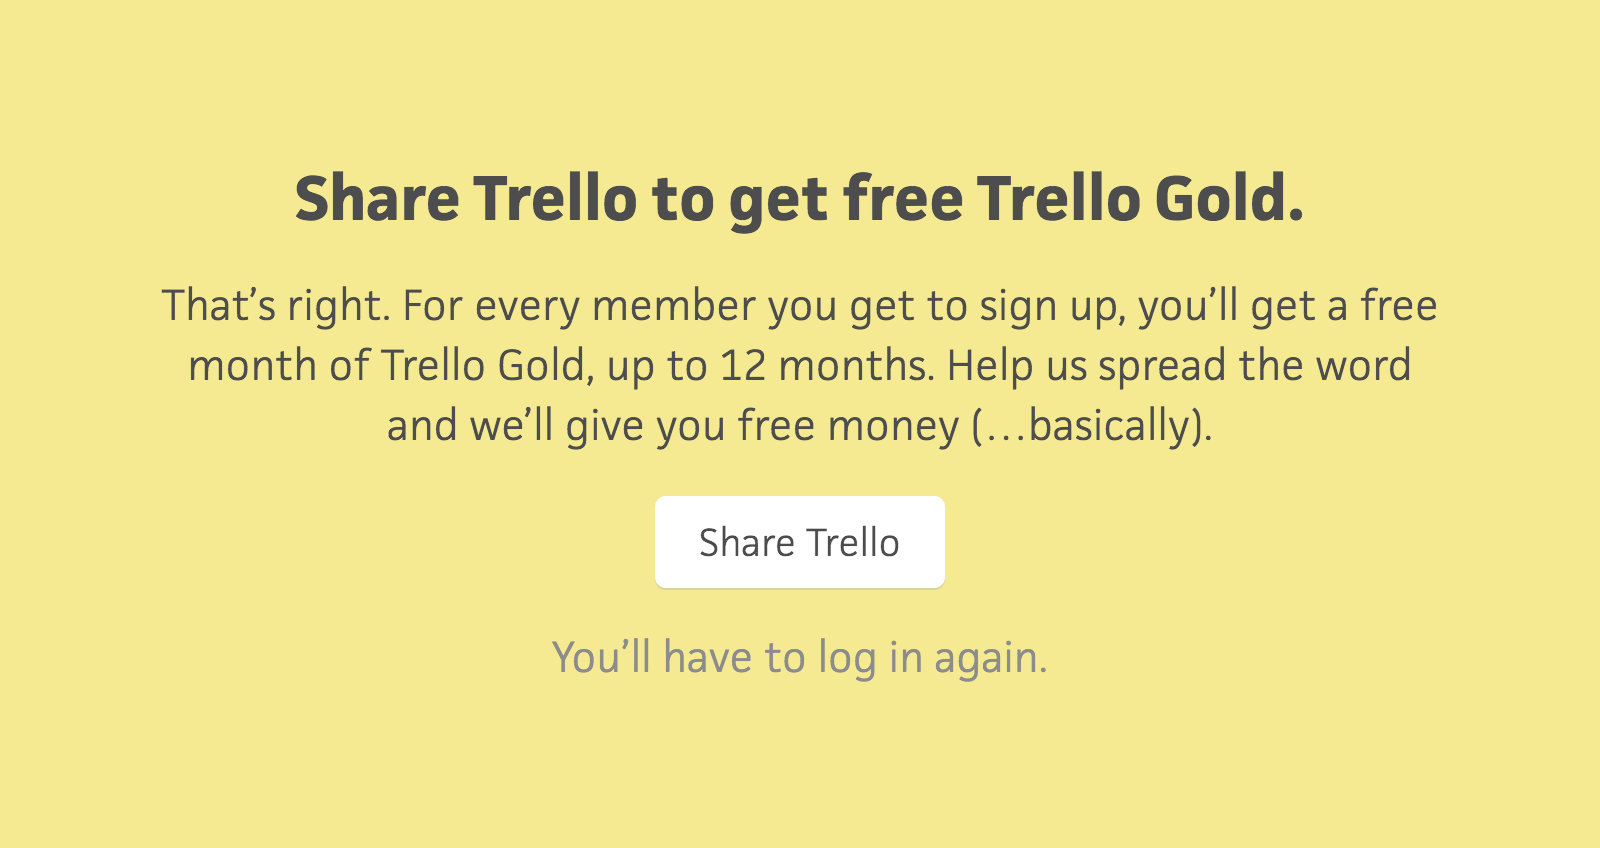 Share Trello to get free Trello Gold